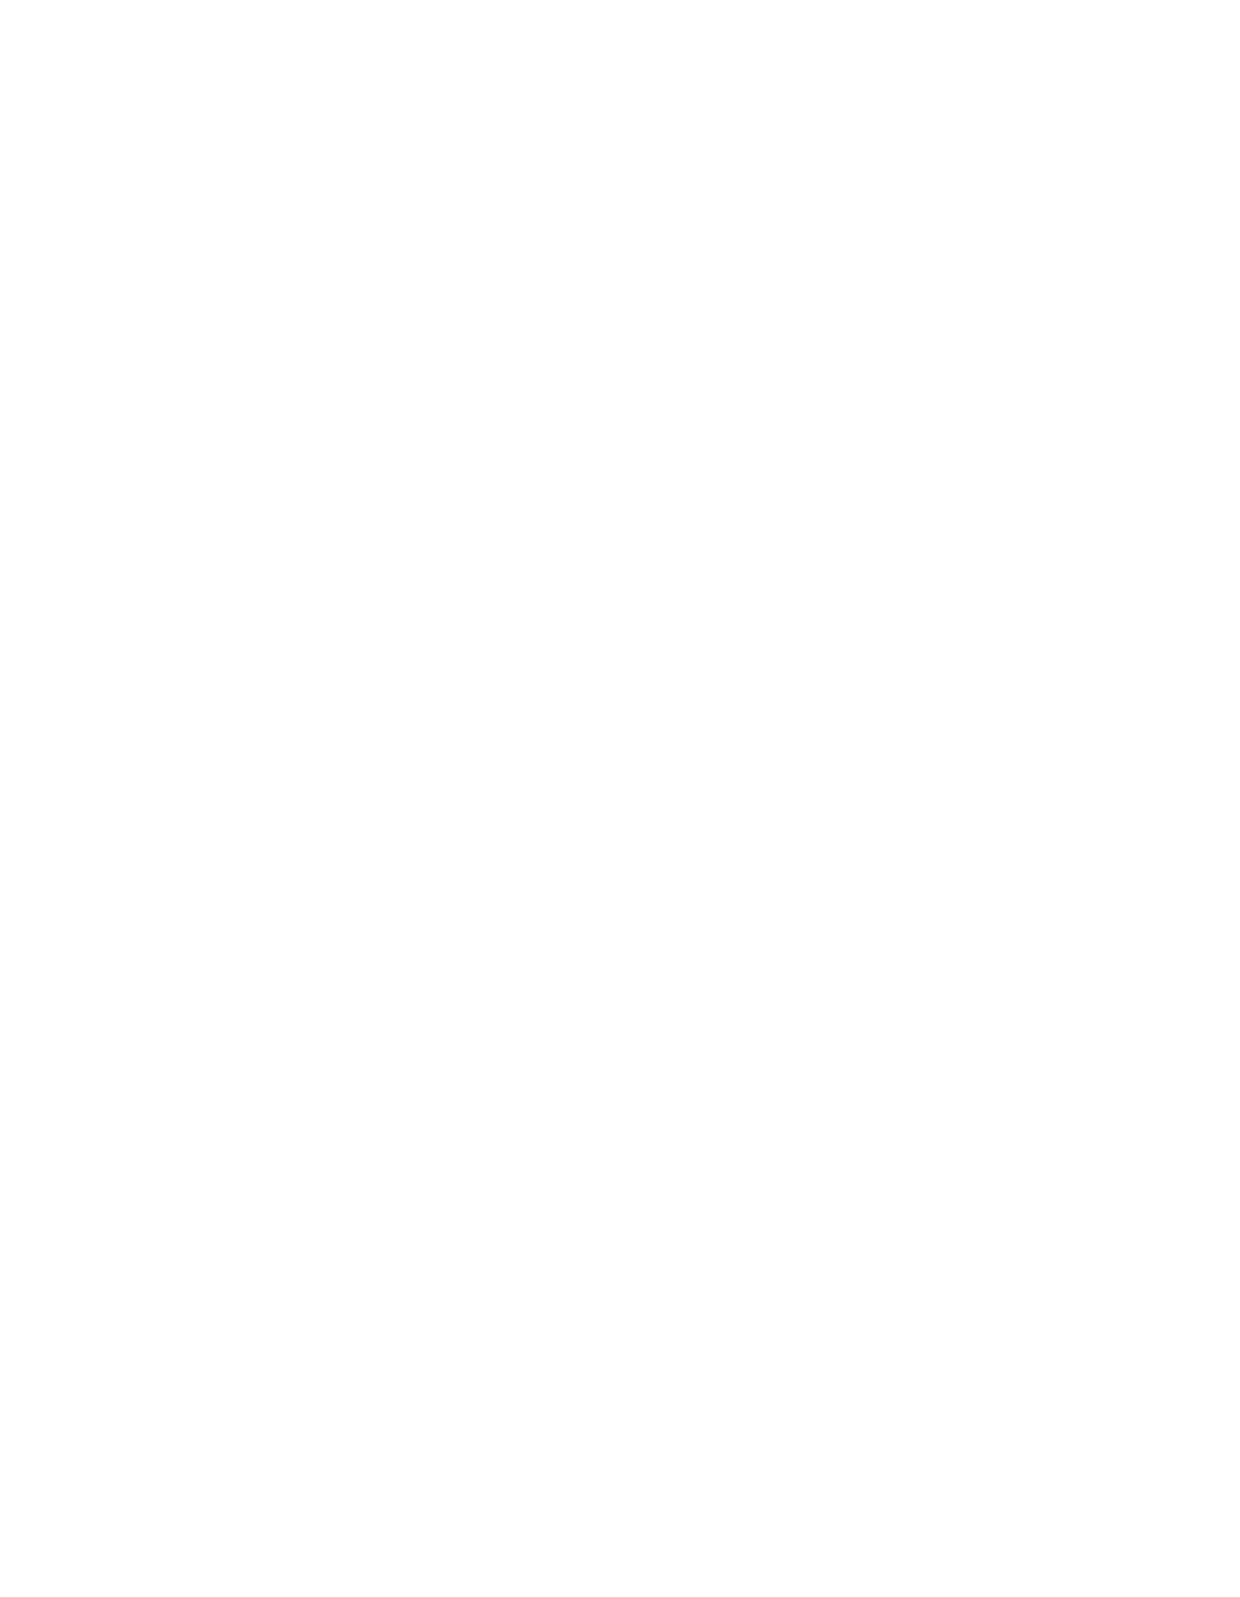 Quilter logo pour fonds sombres (PNG transparent)